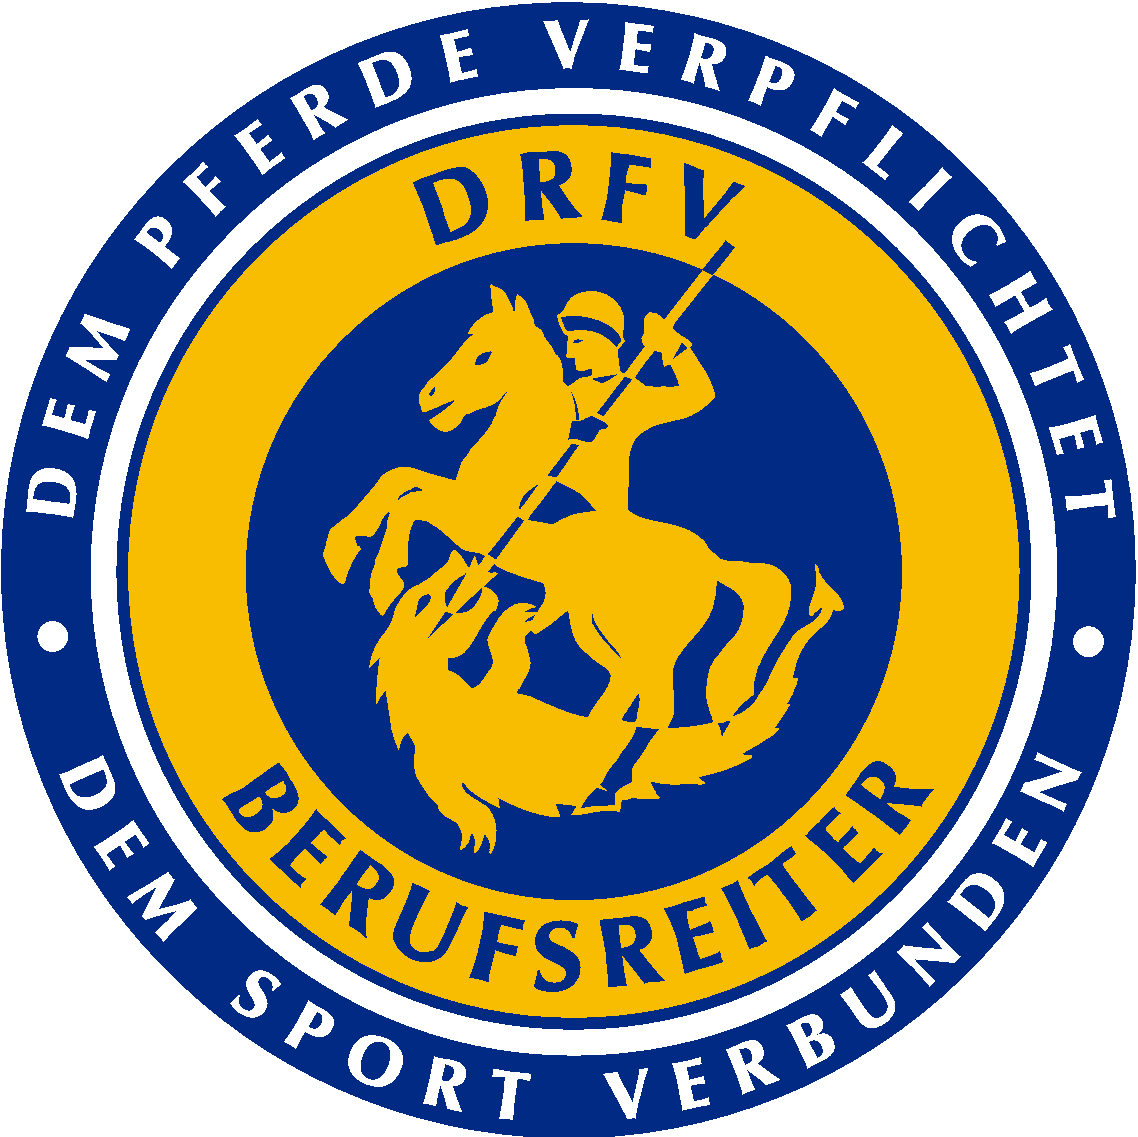 Bundesvereinigung der Berufsreiter im DRFV e.V.